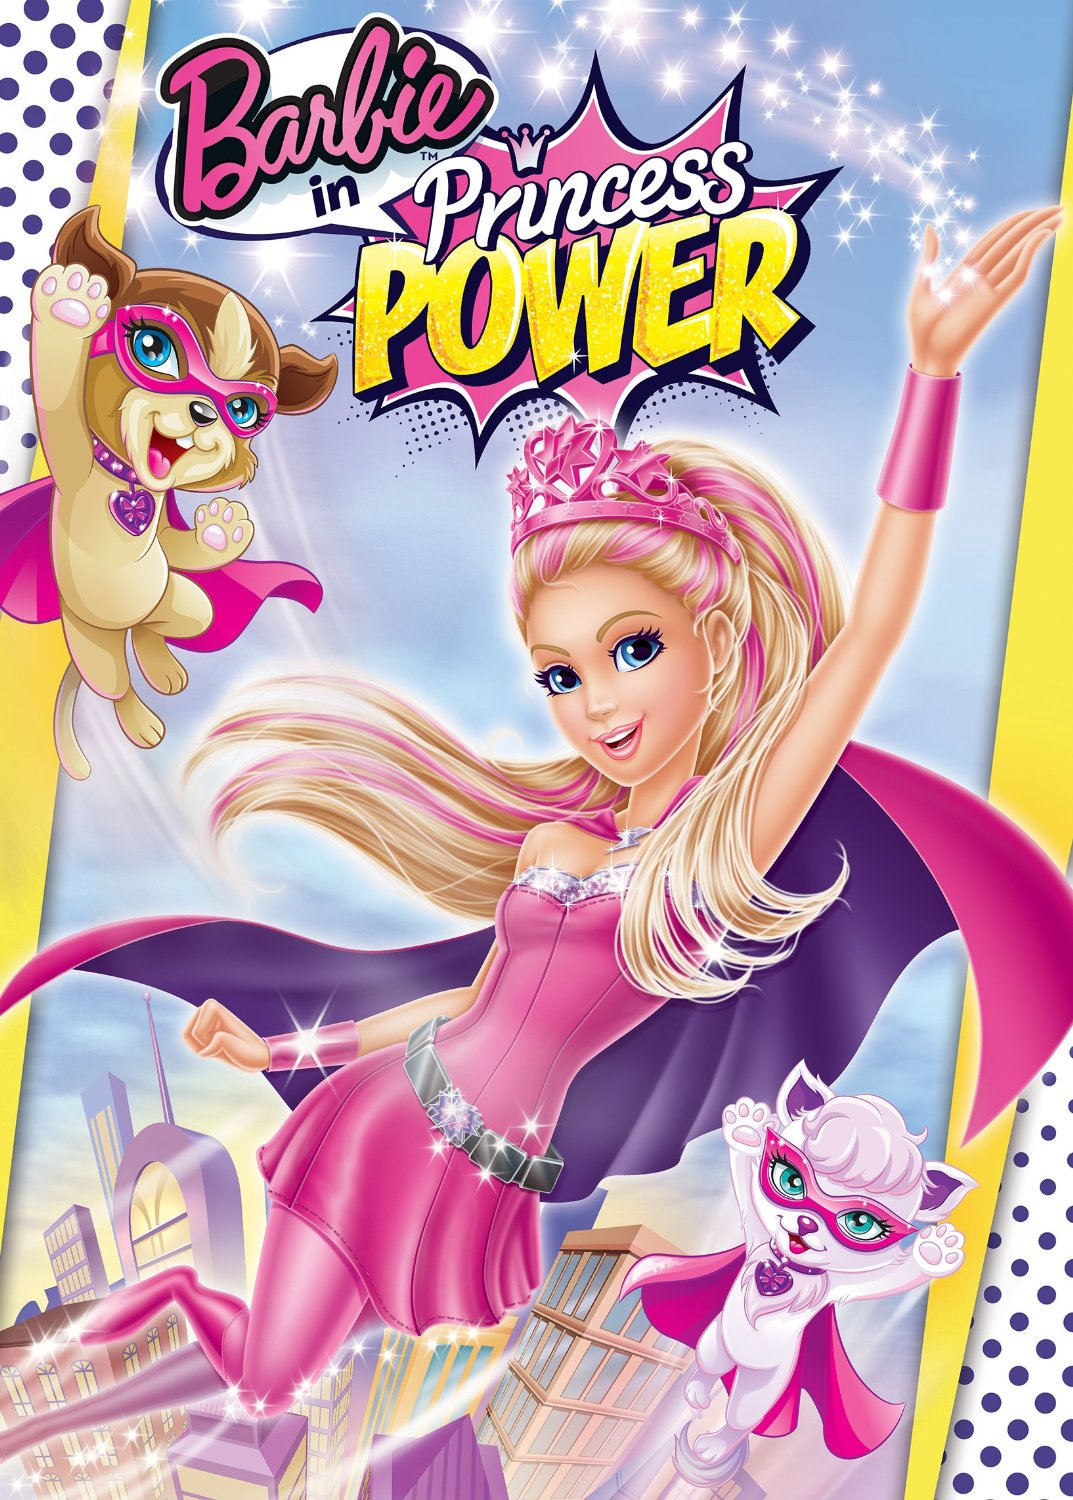 Barbie princesse Raiponce - Barbie Power